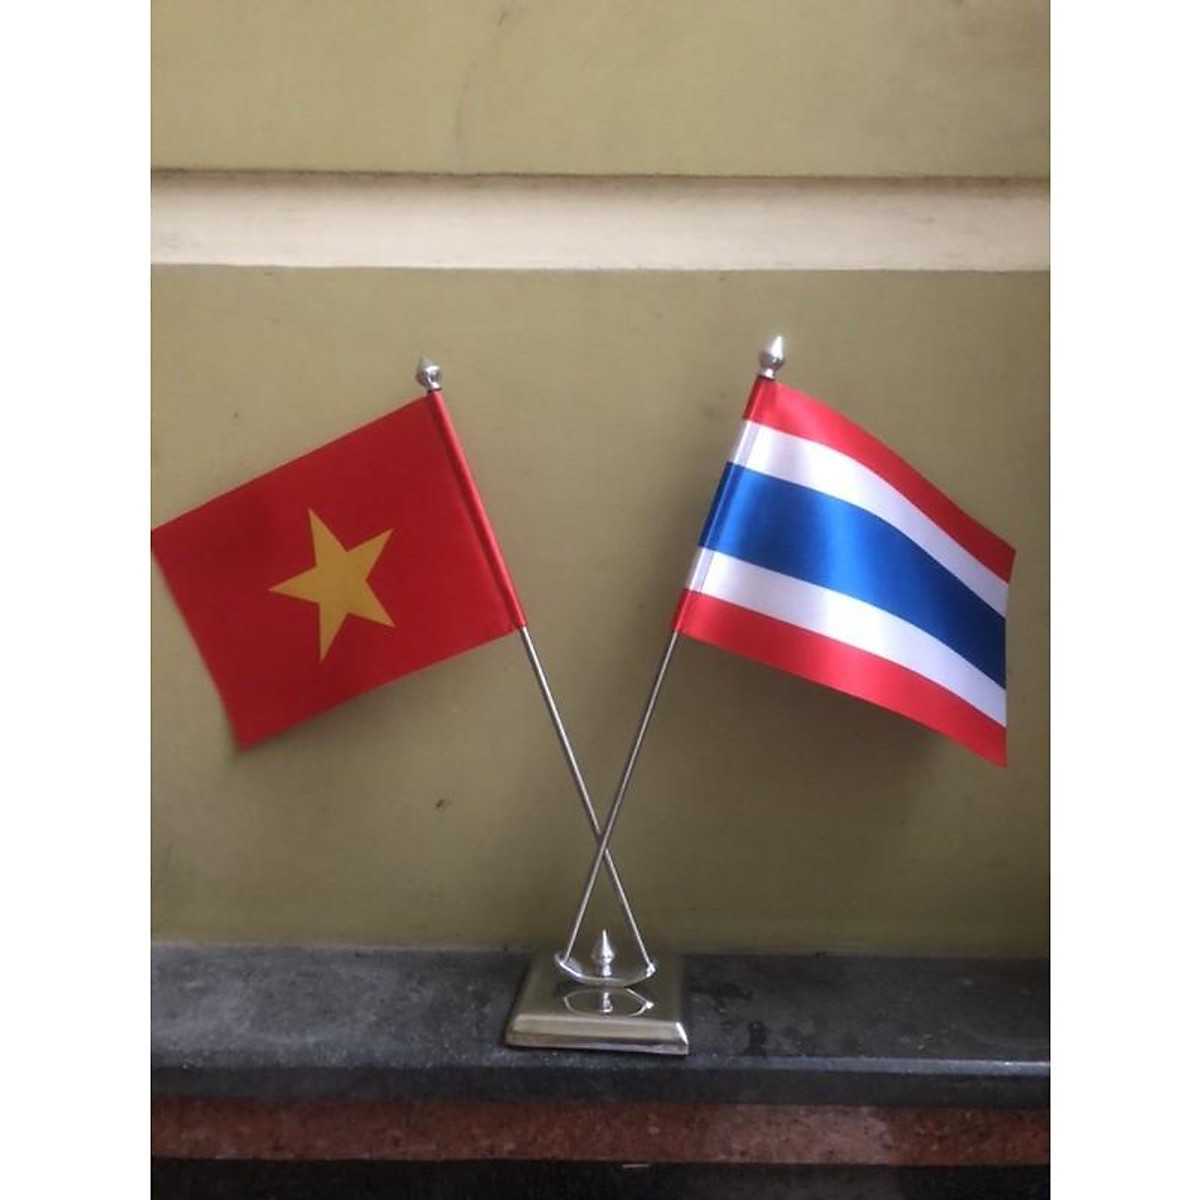 Cờ Thái Lan: Cờ Thái Lan không chỉ là biểu tượng của quốc gia mà còn là niềm tự hào của người dân. Được sử dụng rộng rãi trong các ngày lễ và sự kiện, cờ Thái Lan luôn là đại diện cho sự mạnh mẽ và kiên cường. Hãy cùng đến với hình ảnh cờ Thái Lan để tìm hiểu về giá trị văn hóa và lịch sử của đất nước chùa vàng này.